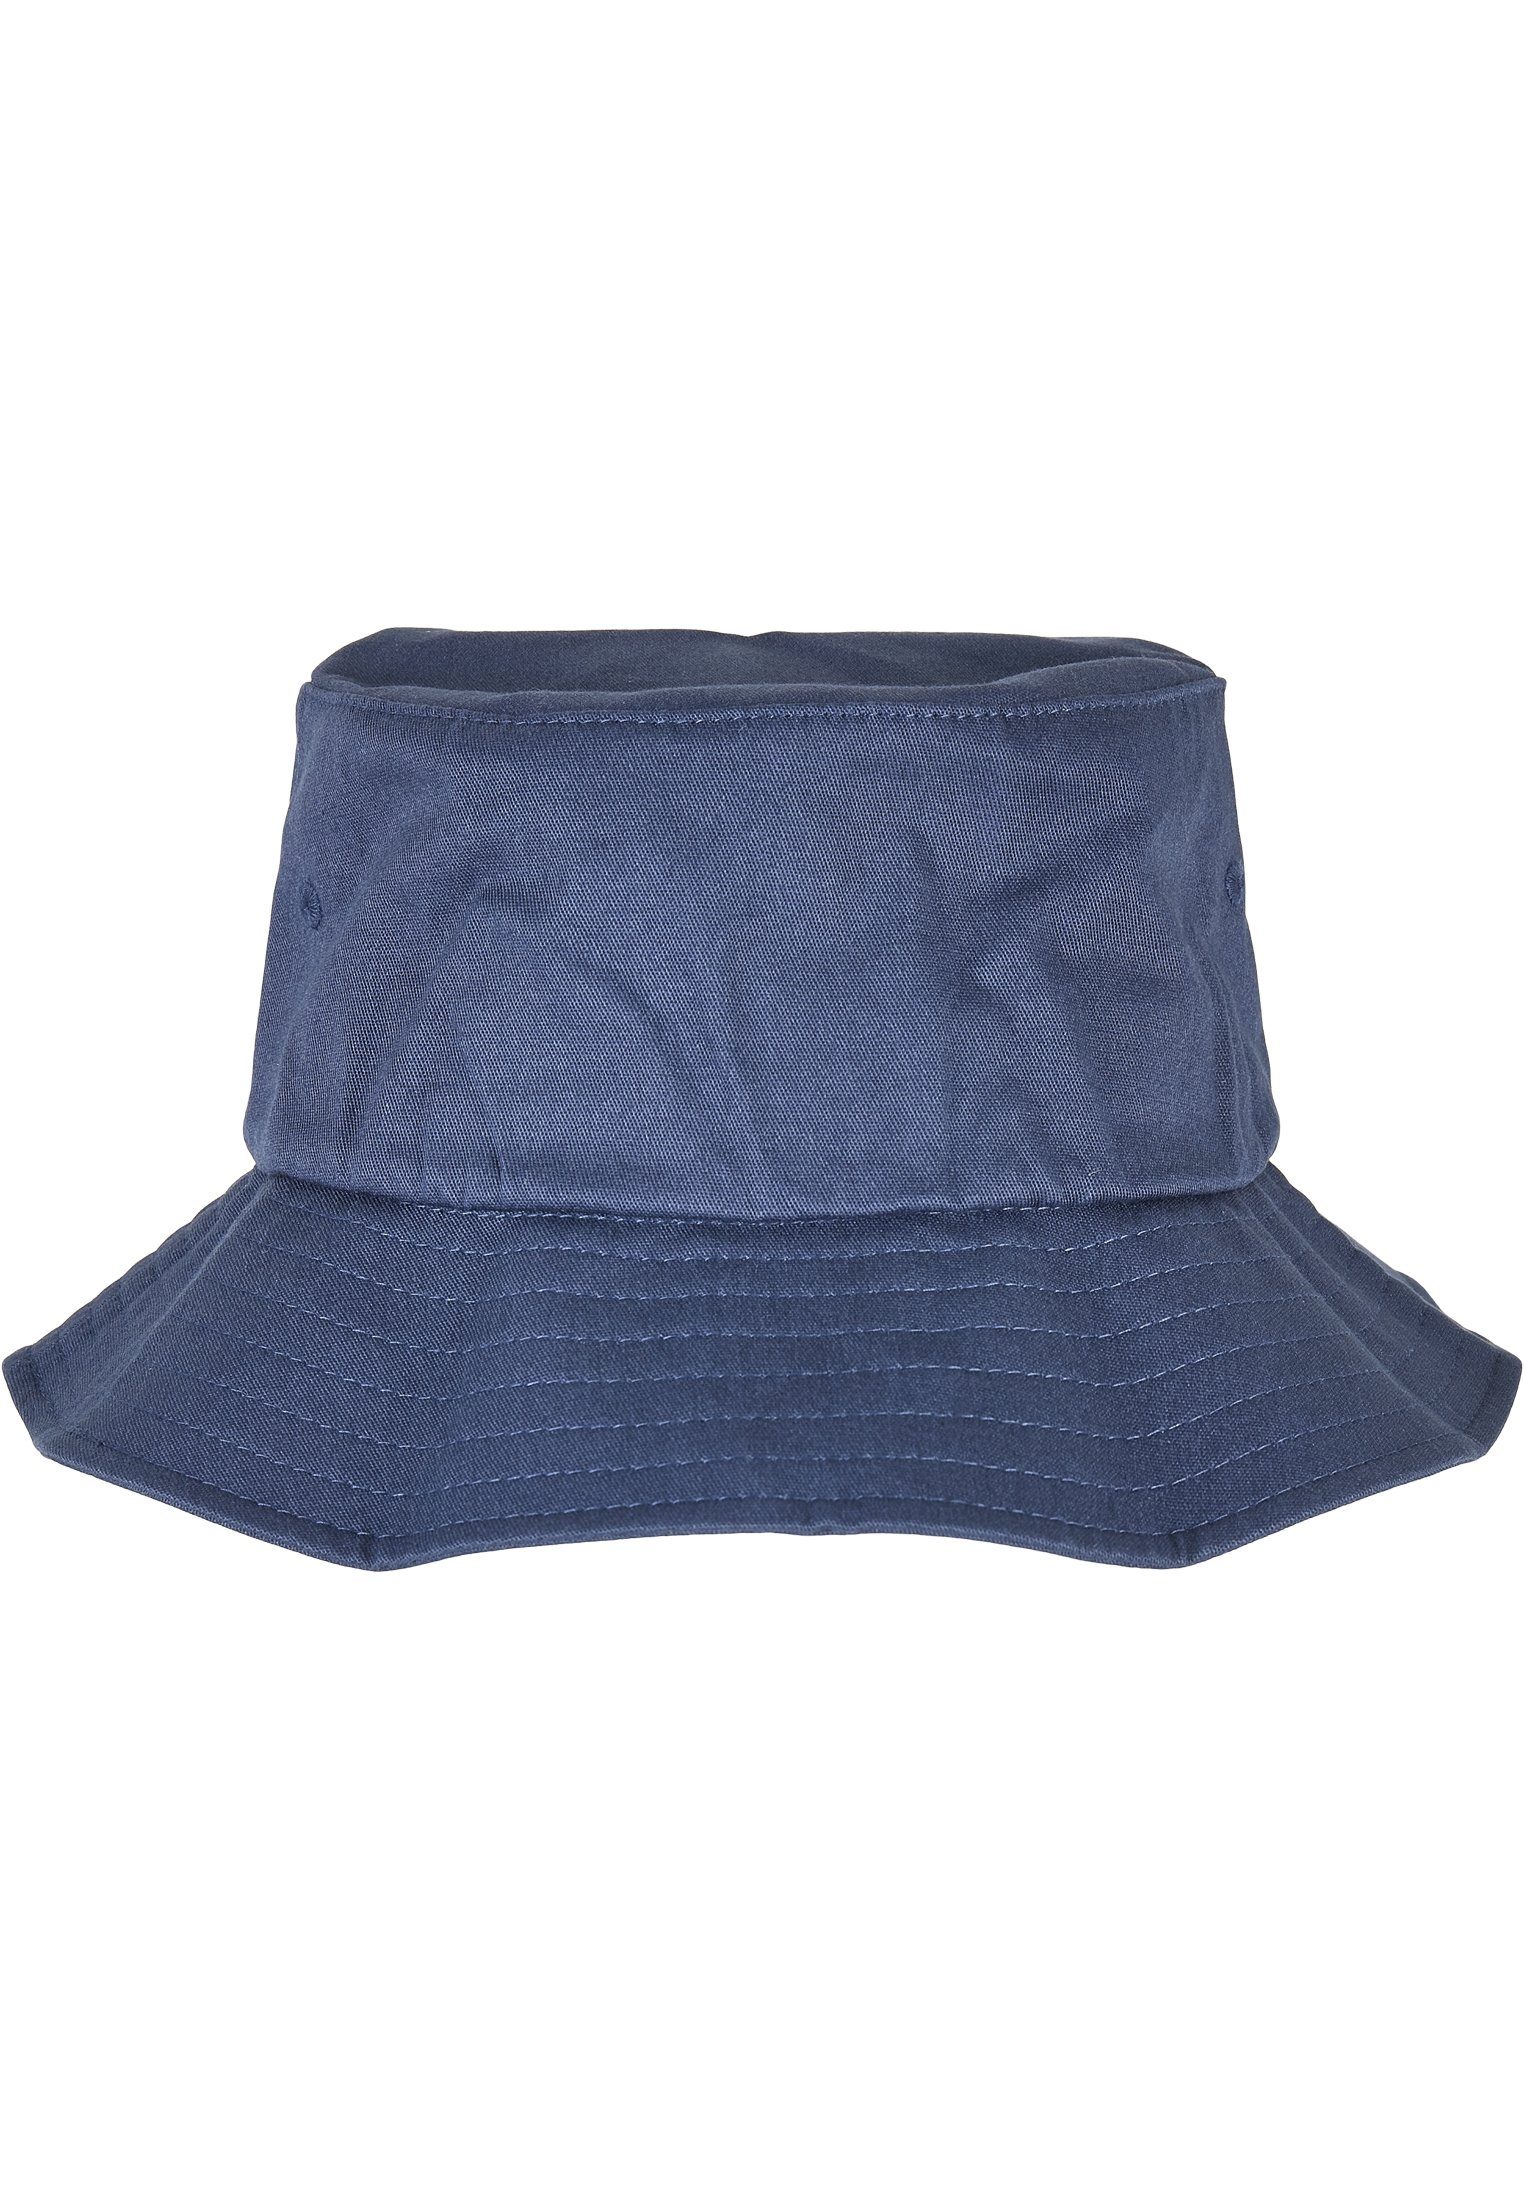 MisterTee Flex Accessoires Liner One Bucket Cap Hat